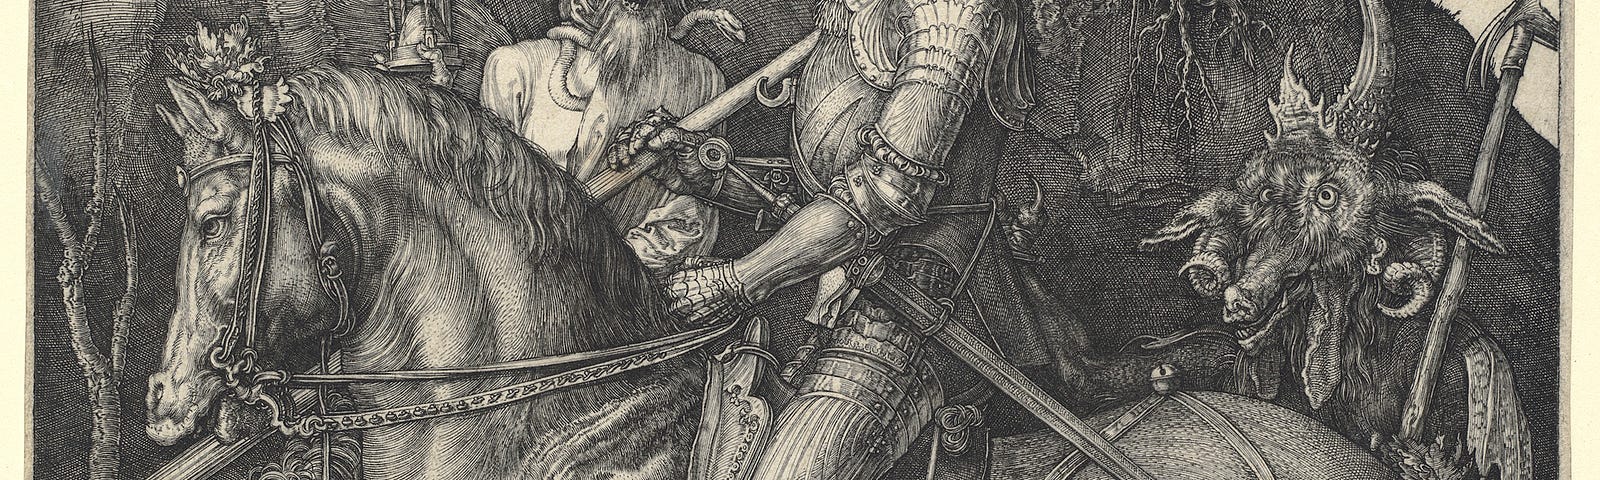 Knight, Death and the Devil, 1513, Albrecht Dürer — National Gallery of Art.